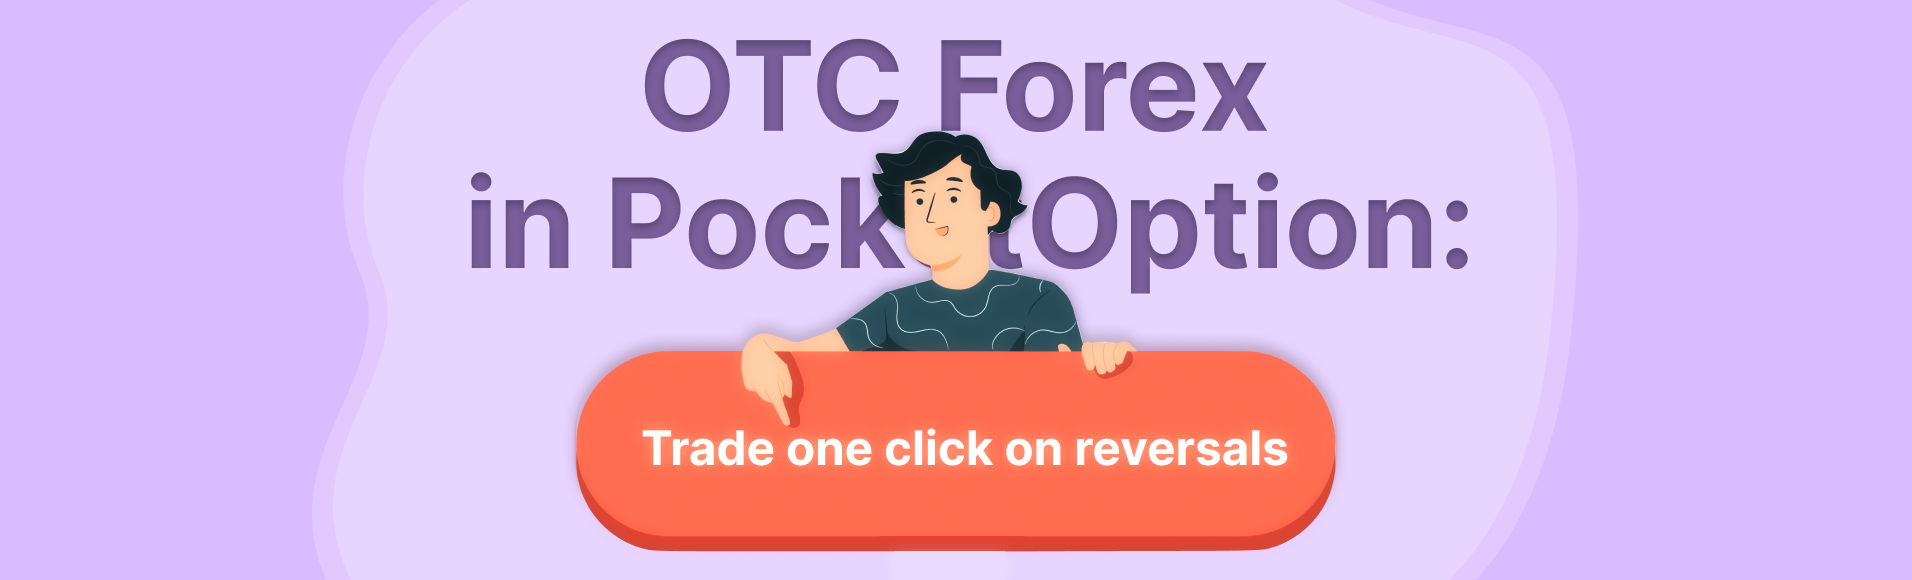 Forex OTC en PocketOption: opere con un clic en reversiones